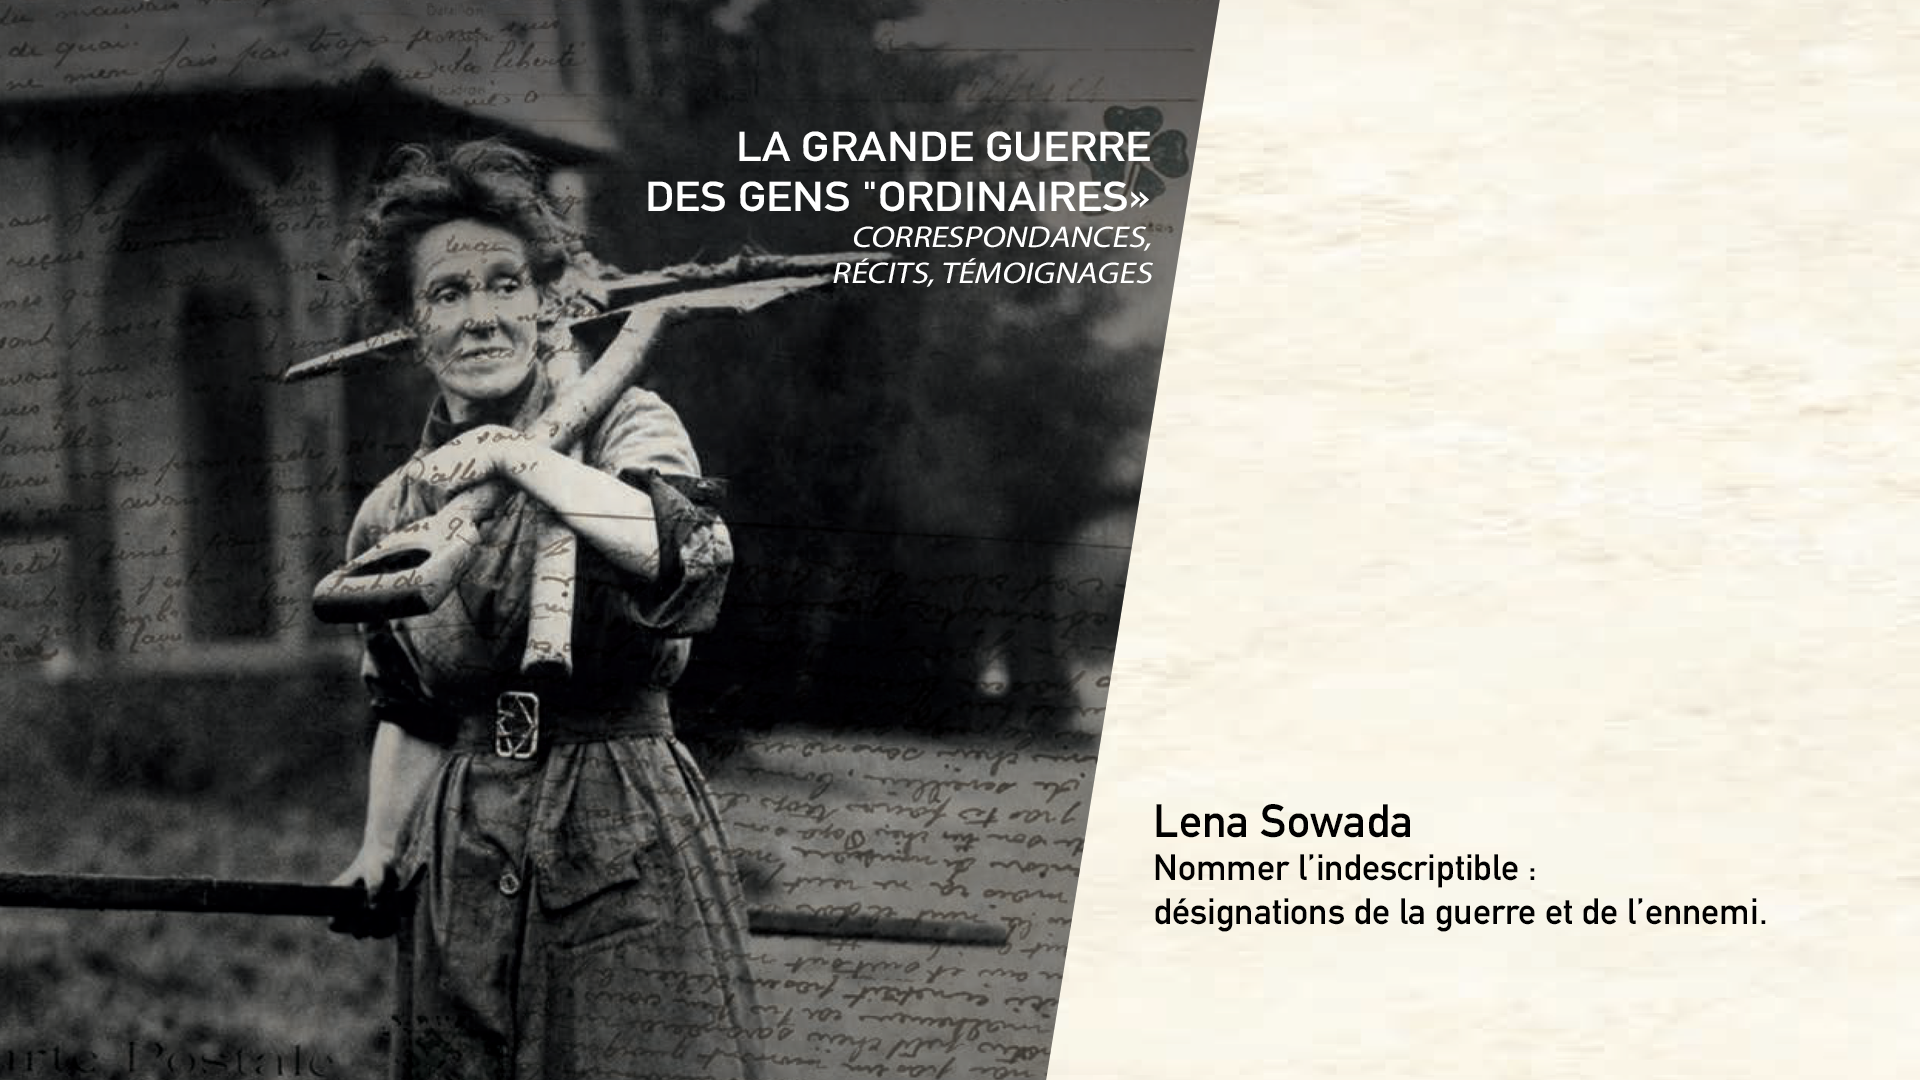 Lena Sowada - Nommer l’indescriptible : désignations de la guerre et de l’ennemi.